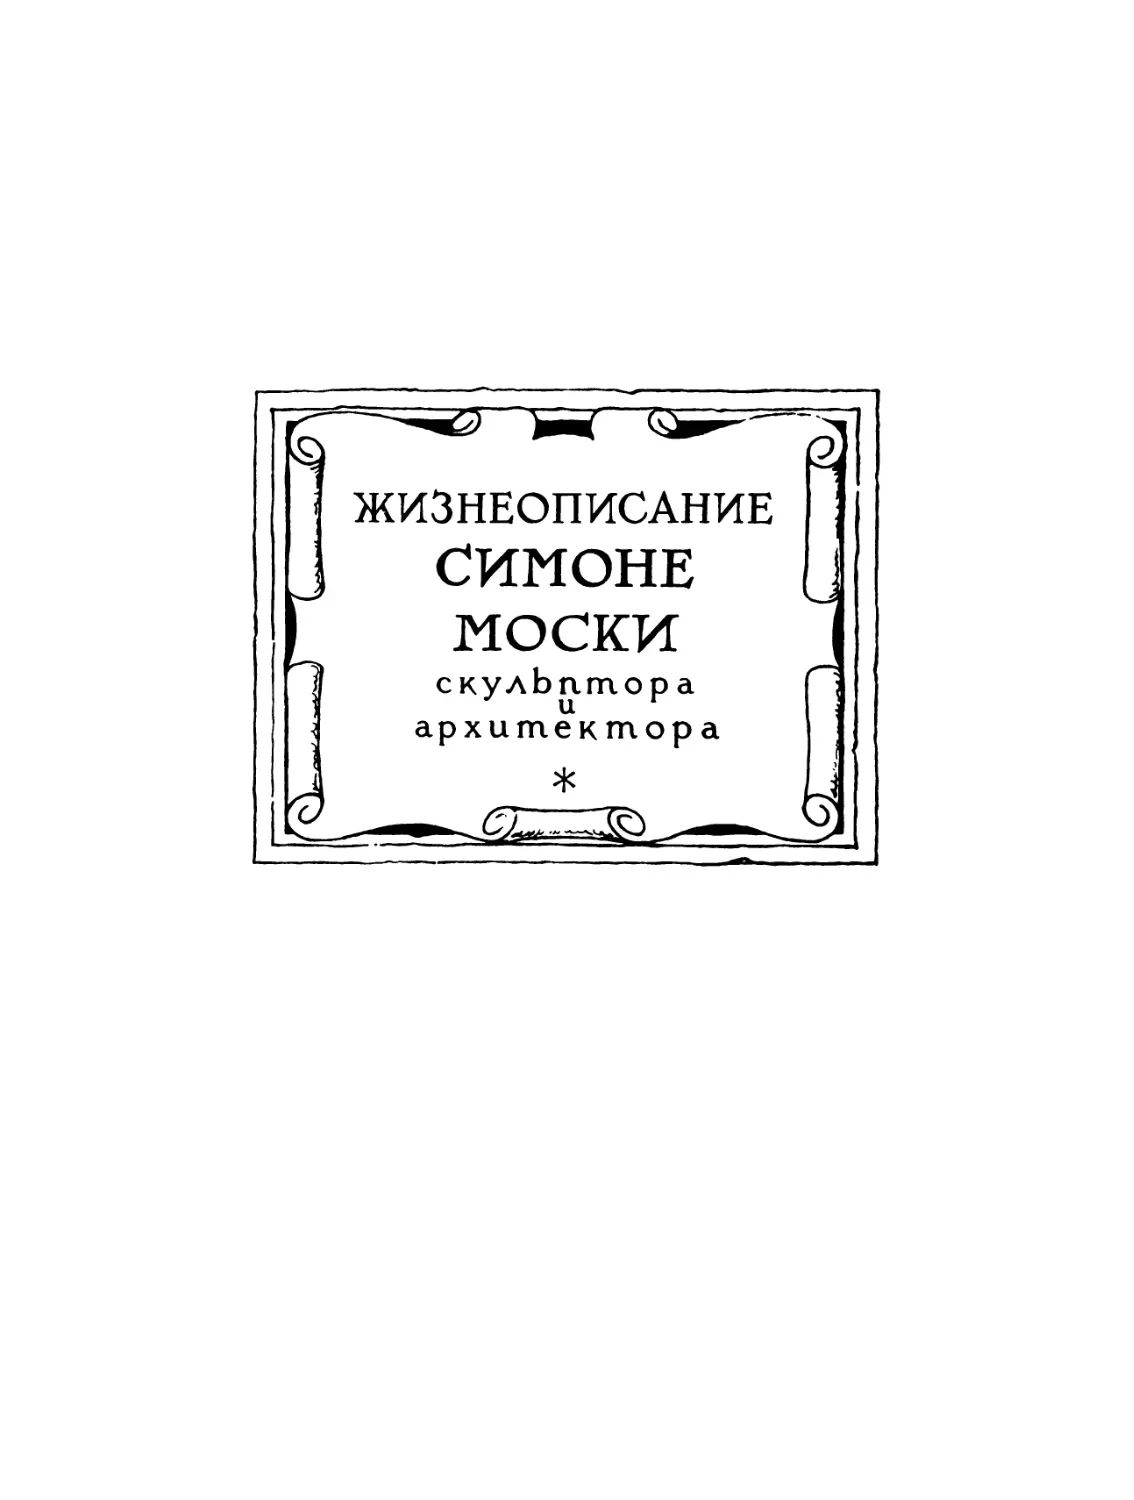 Жизнеописание Симоне Моски, скульптора и архитектора